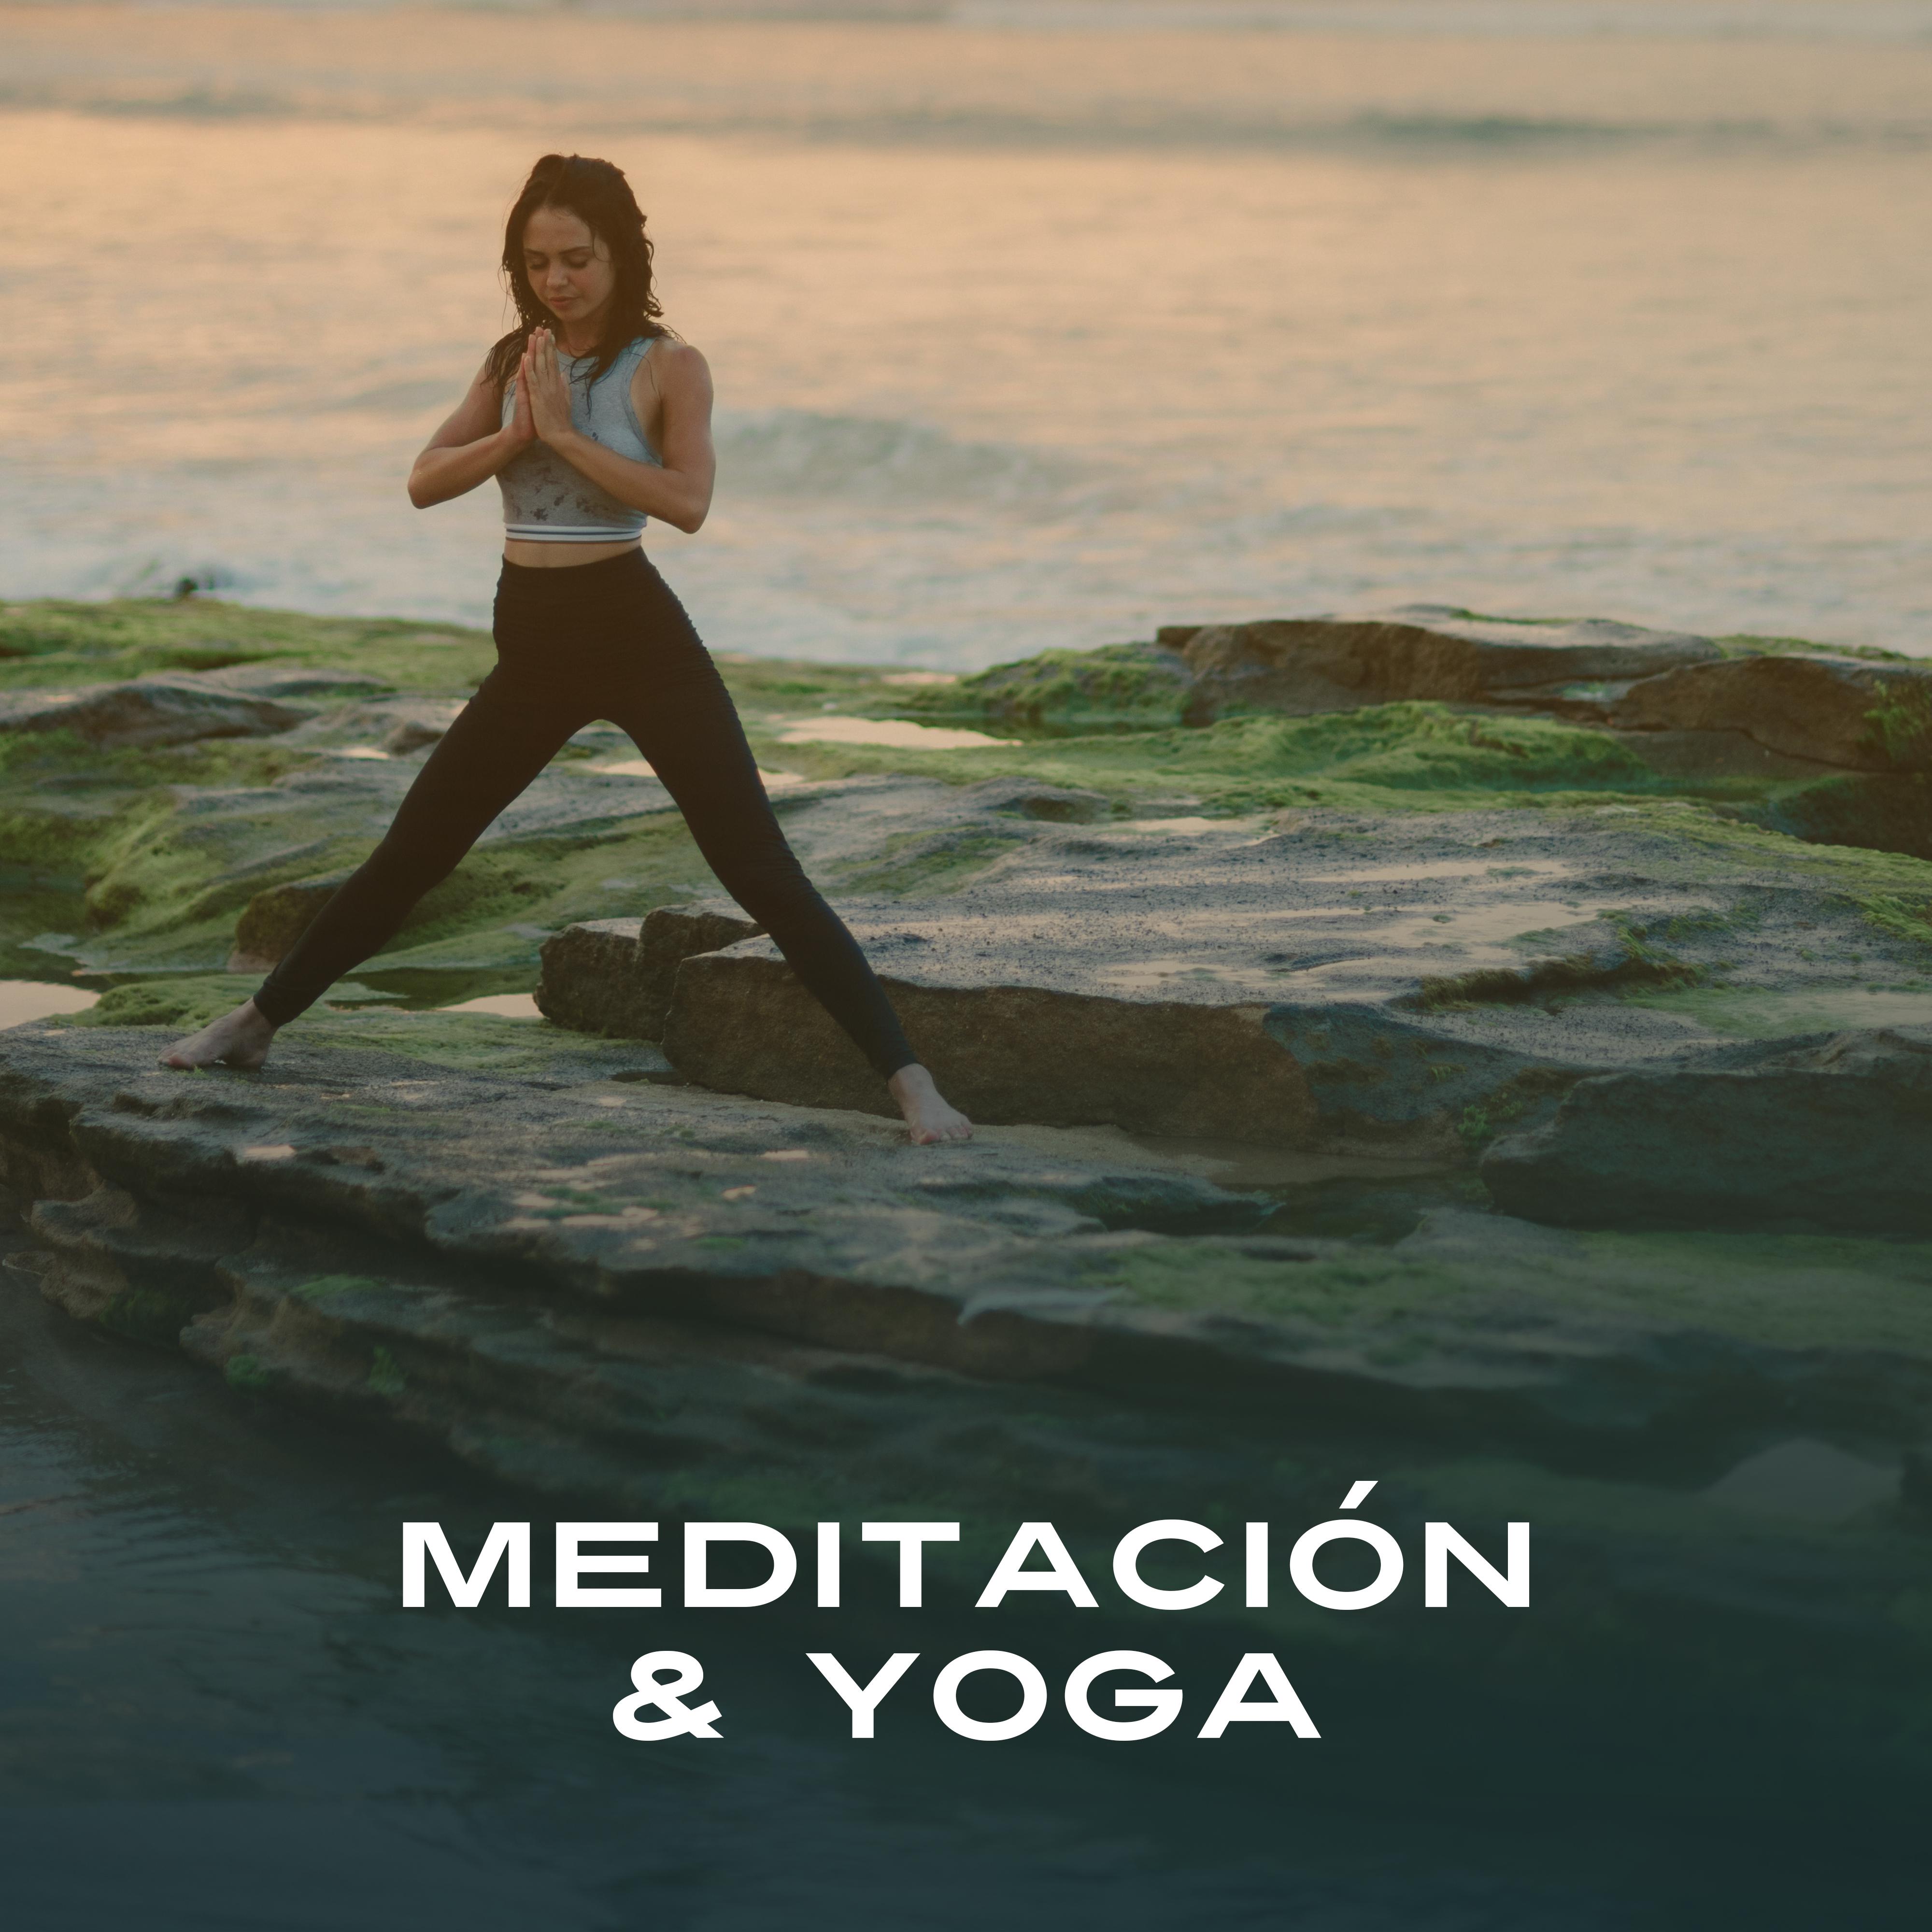 Meditacio n  Yoga  Zen, Mantra, La Naturaleza Suena para Relajarse, Meditacio n Profunda, New Age, Mente Clara